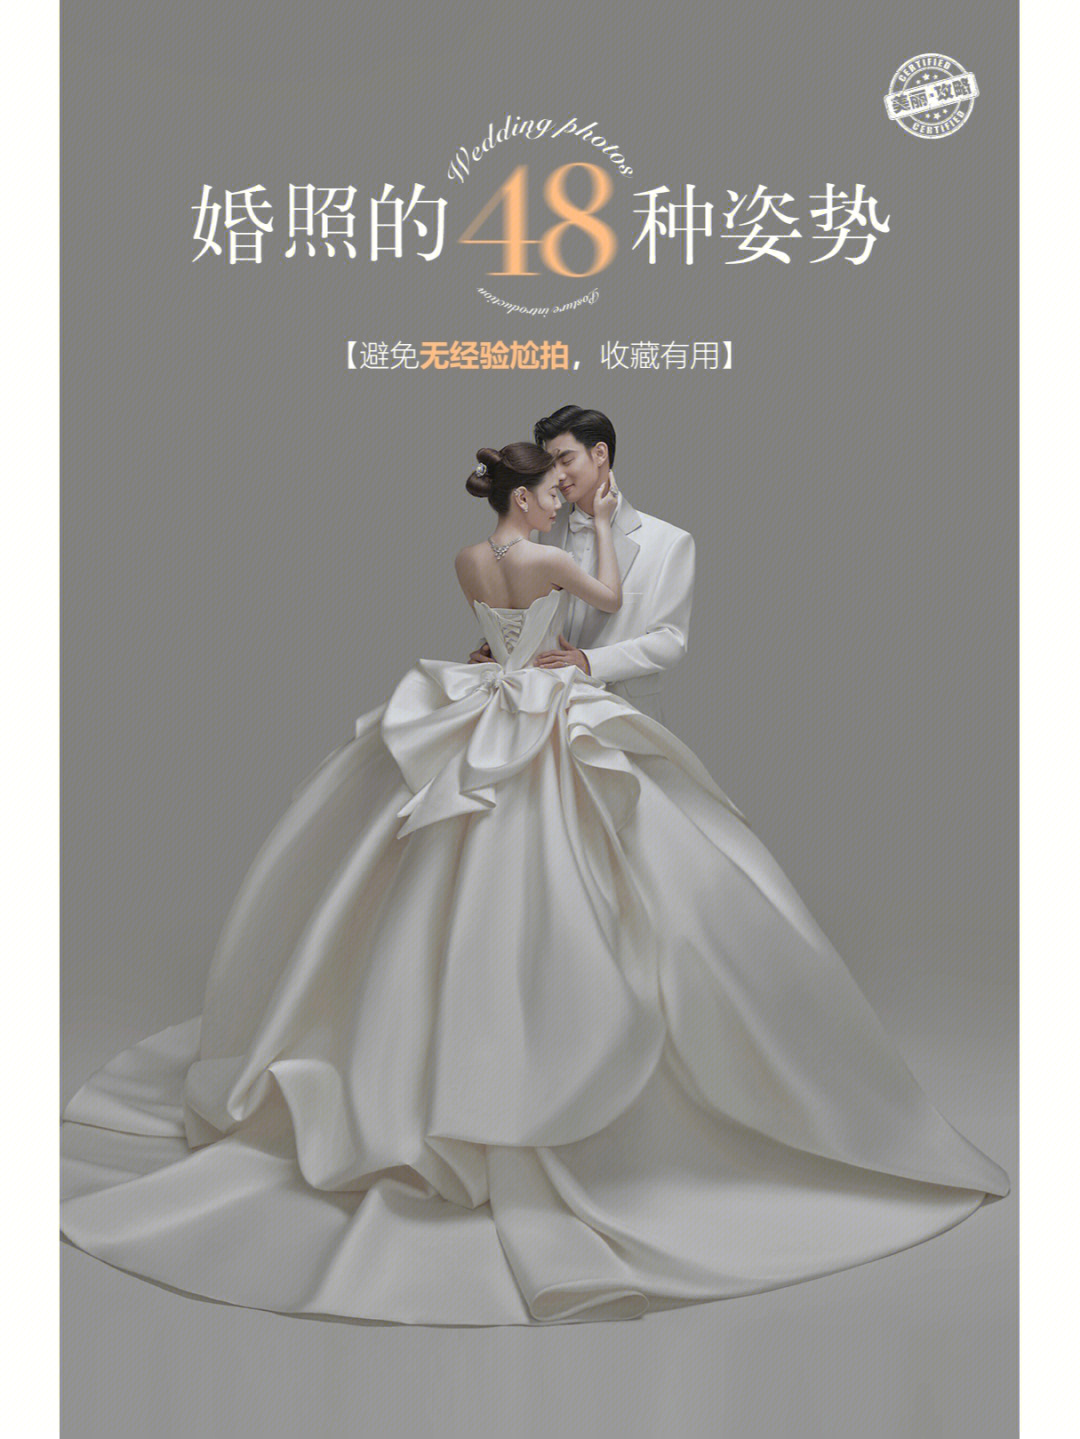 小薇为备婚姐妹们贴心准备了48个超简单实用的拍婚纱照姿势9589